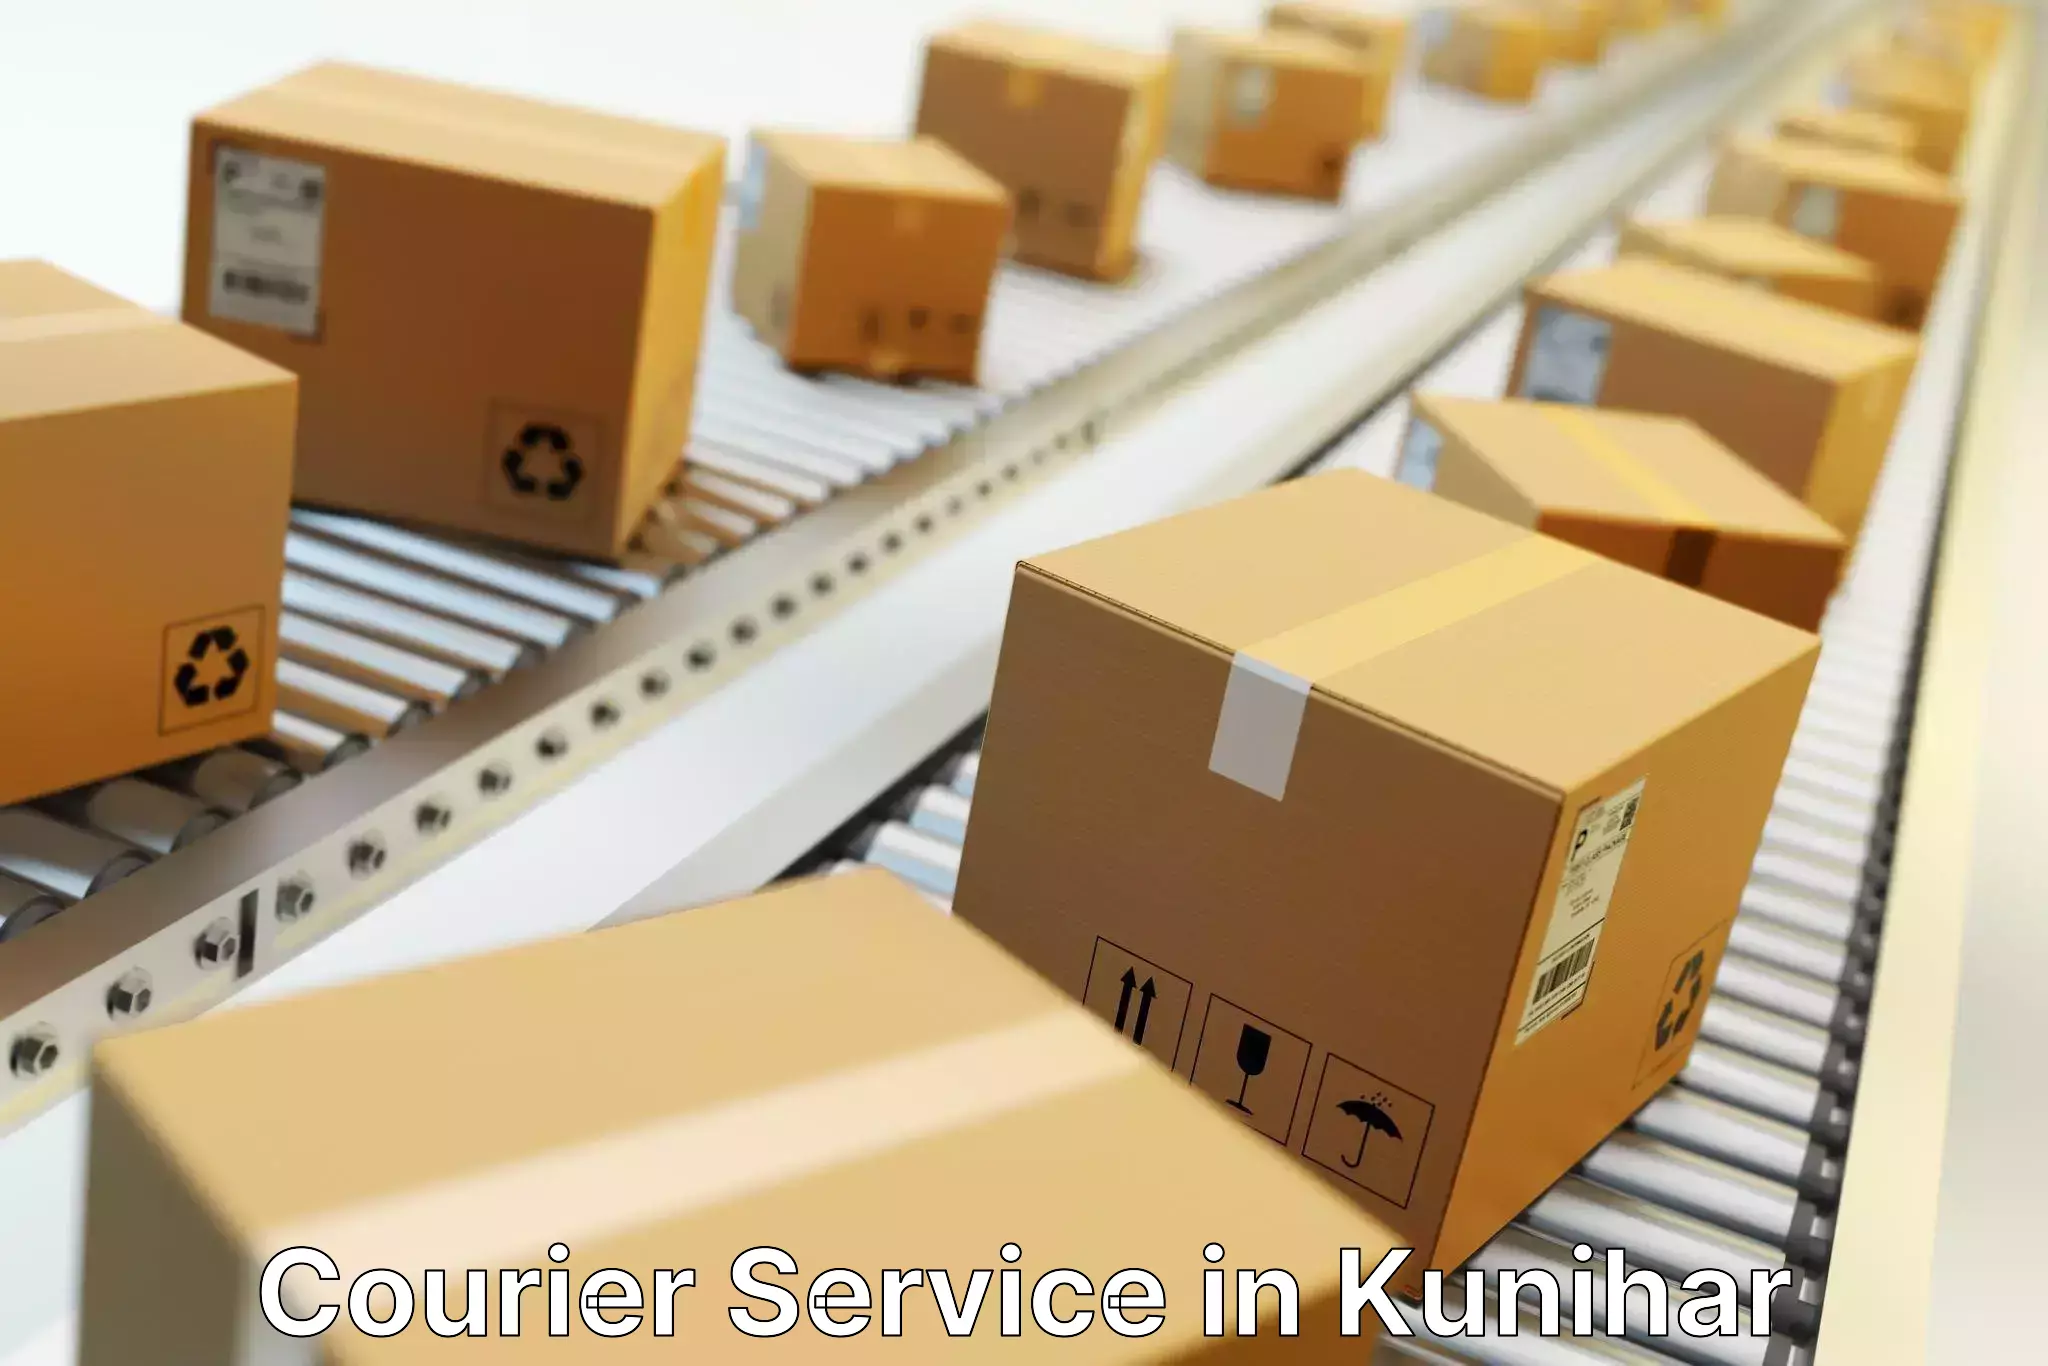 Fast parcel dispatch in Kunihar